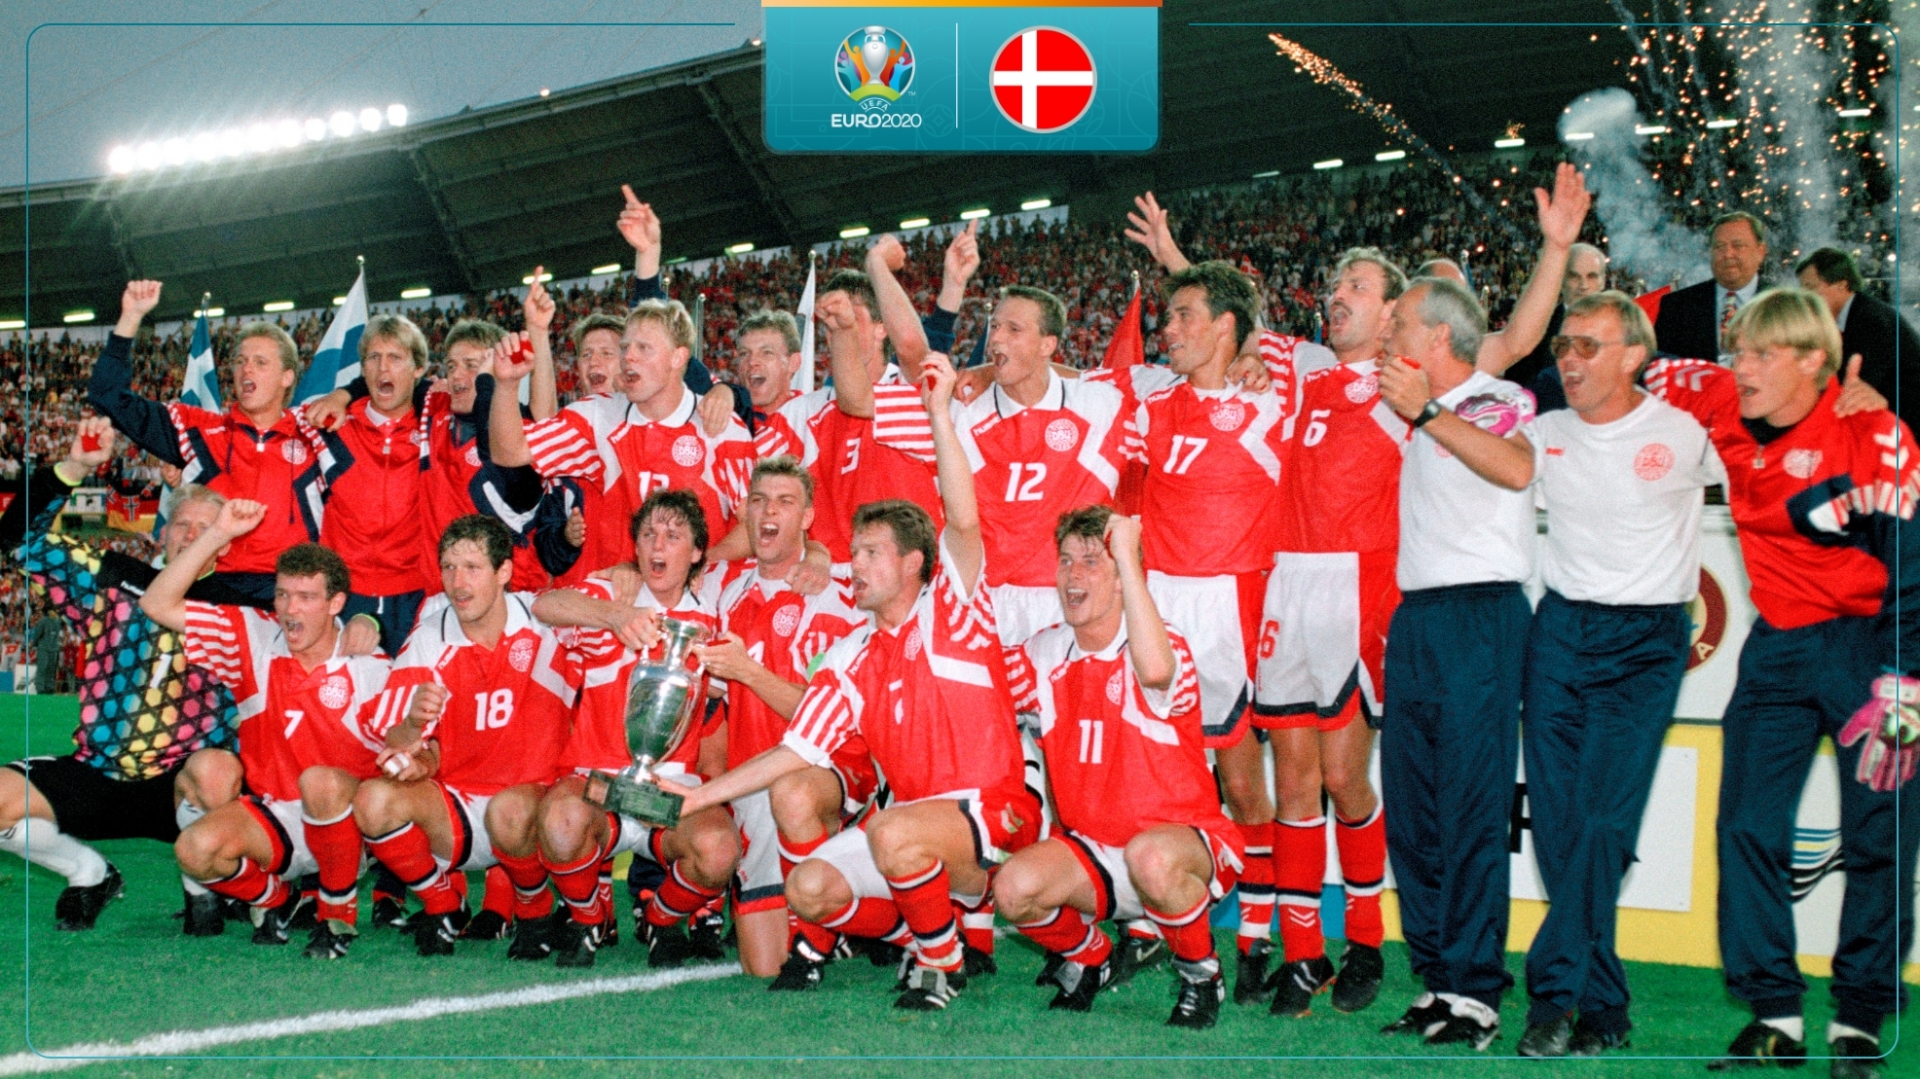 Câu chuyện EURO: Sự thật phía sau hành trình kỳ lạ vô địch châu Âu năm 1992 của 'những chú lính chì dũng cảm' - Ảnh 3